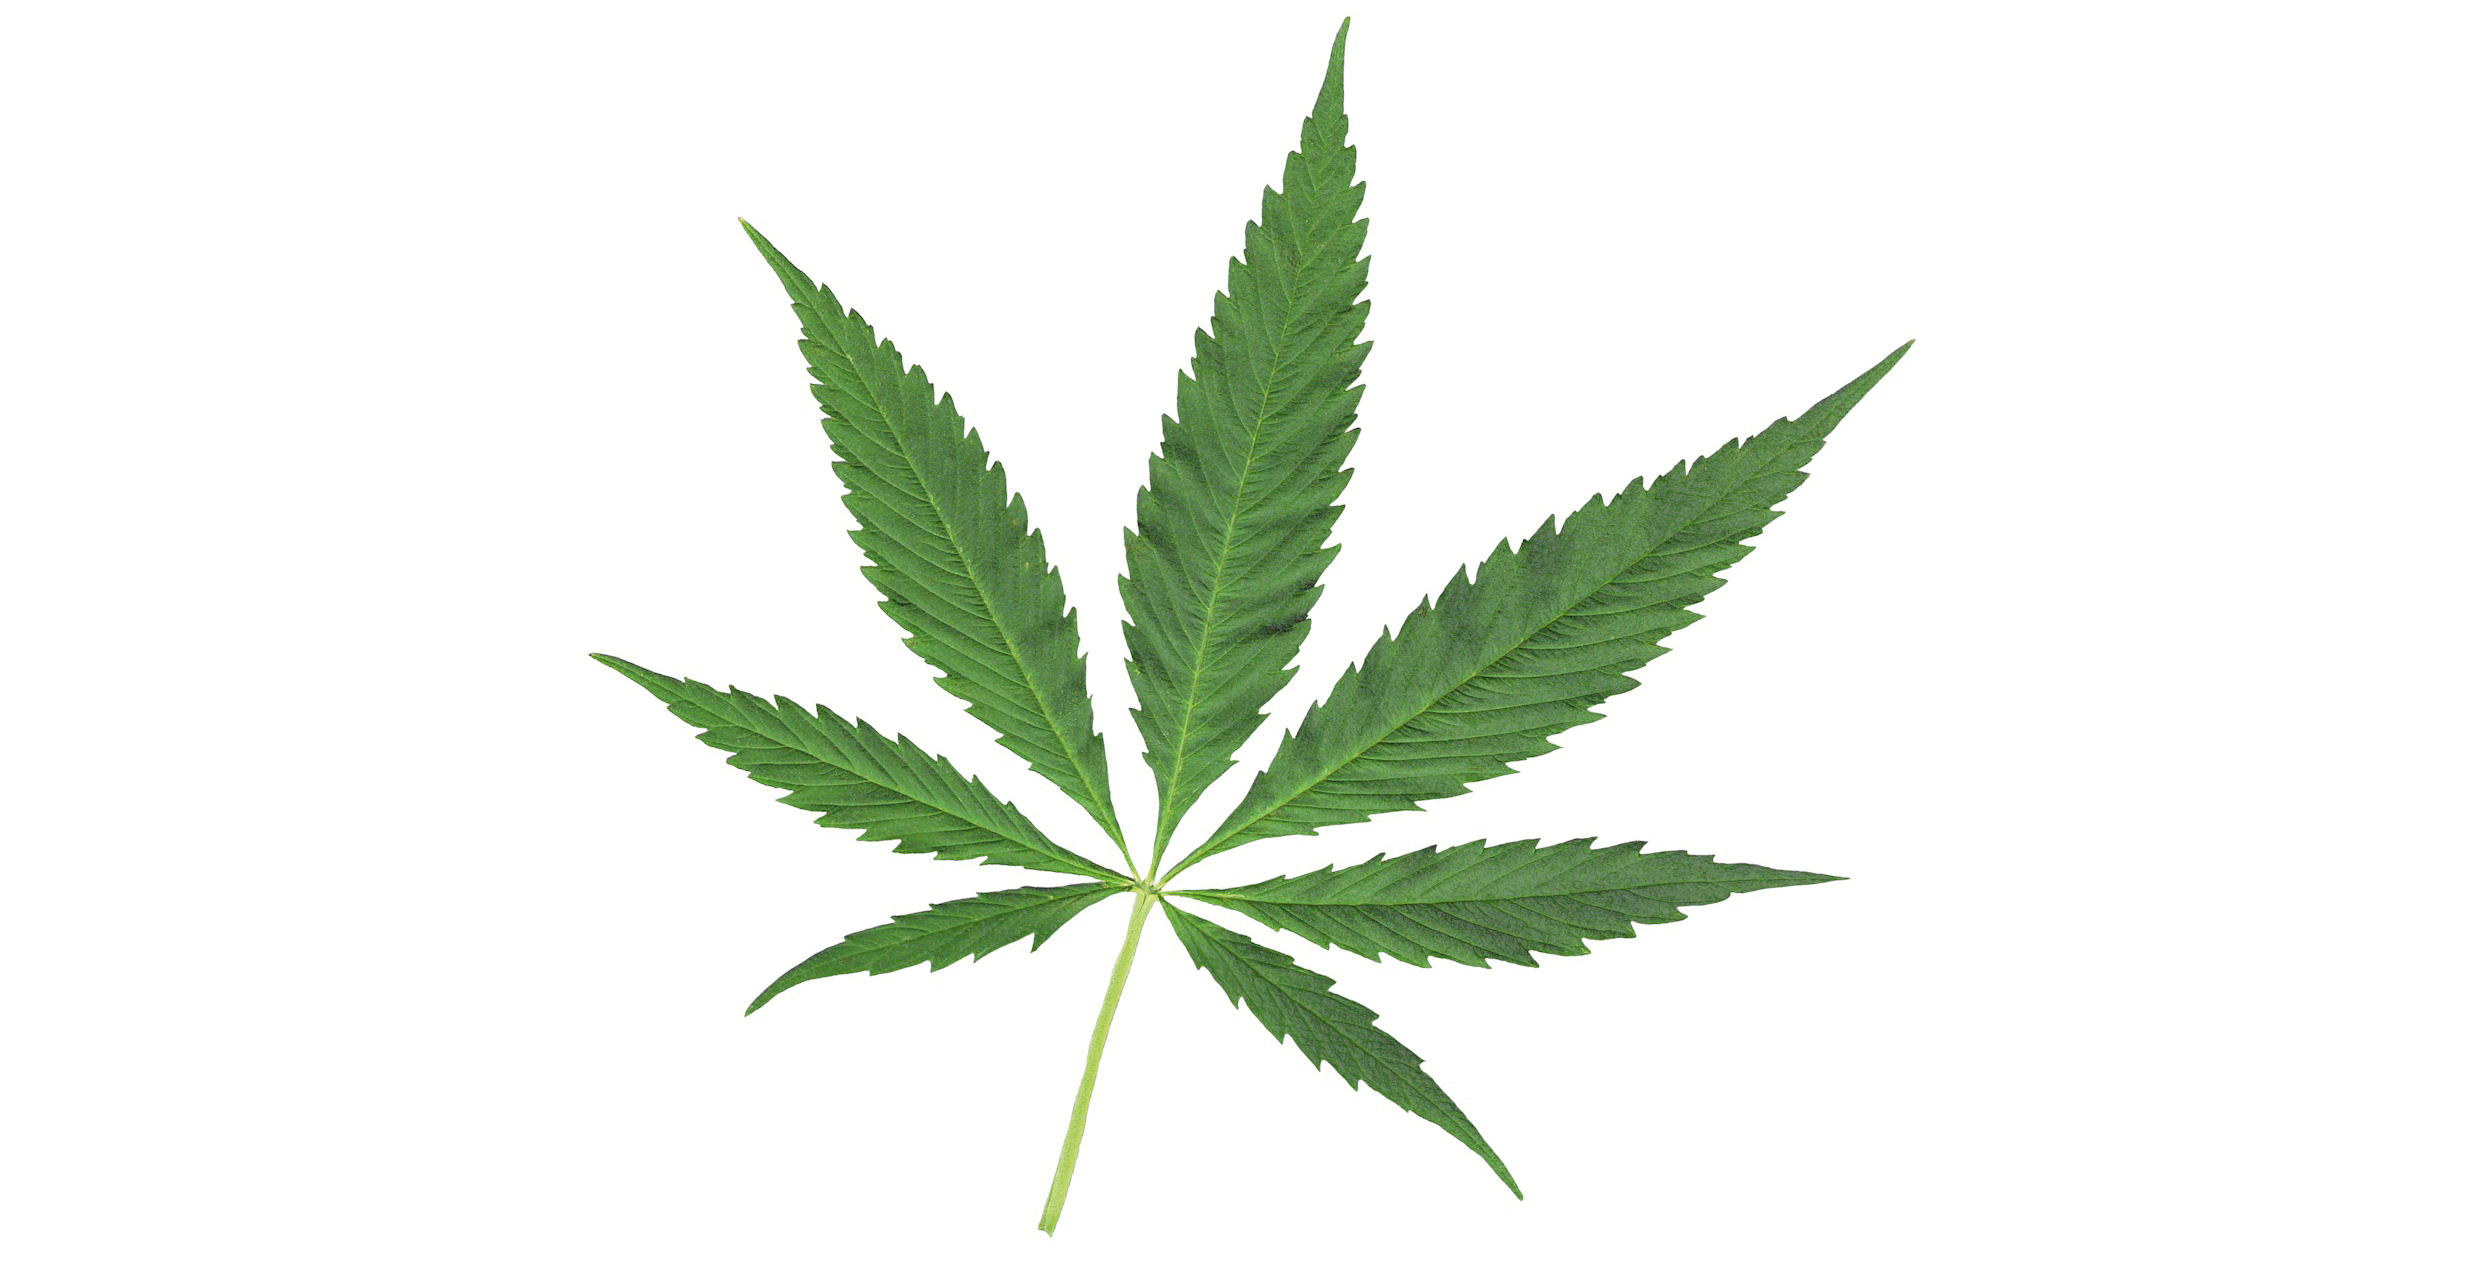 Symbolhafte Darstellung der Blätter des Hanfes (Cannabis) als abhängigkeitserzeugendes Mittel.